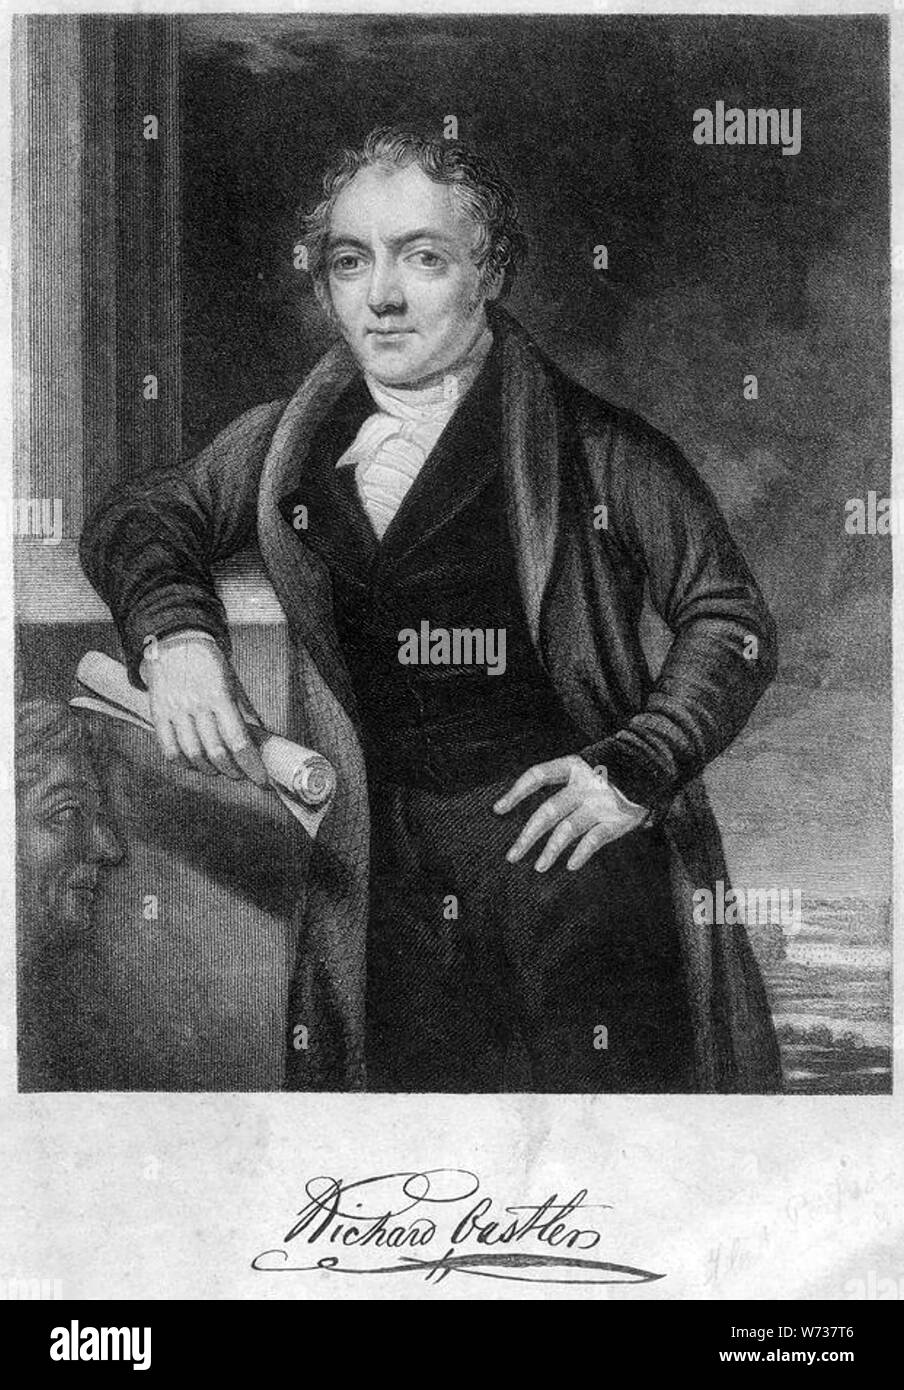 RICHARD OSTLER (1789-1861) homme politique conservateur radical Banque D'Images